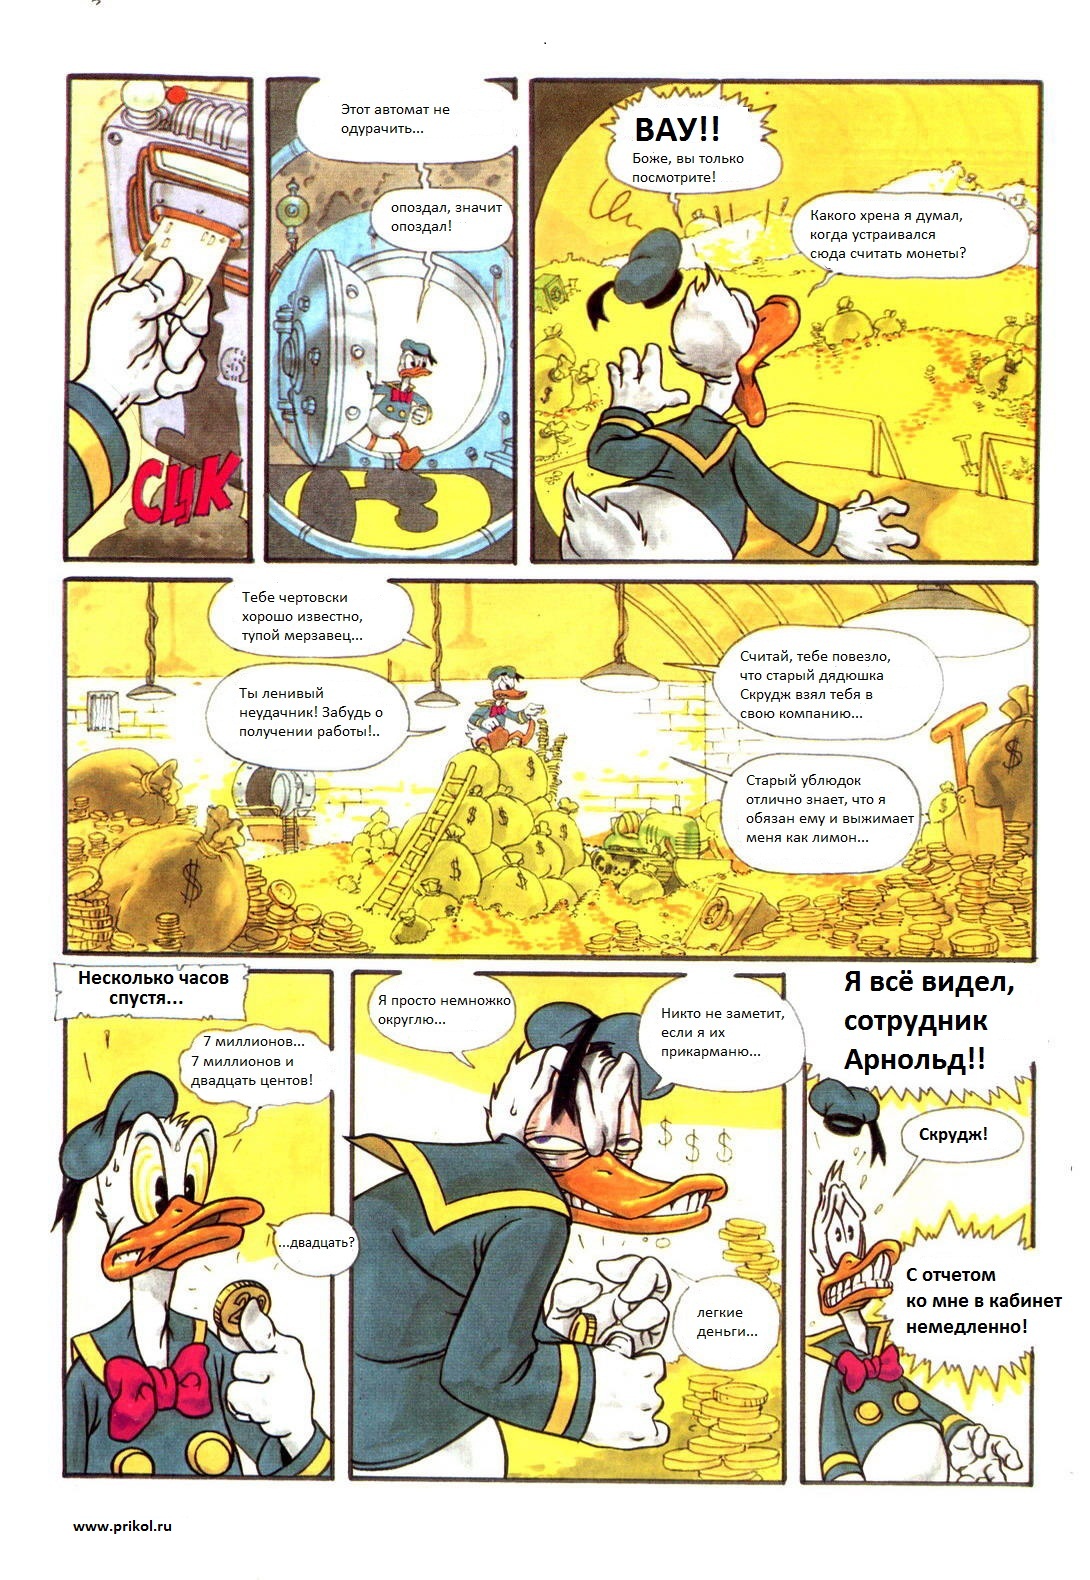 duck-tales-comics-05